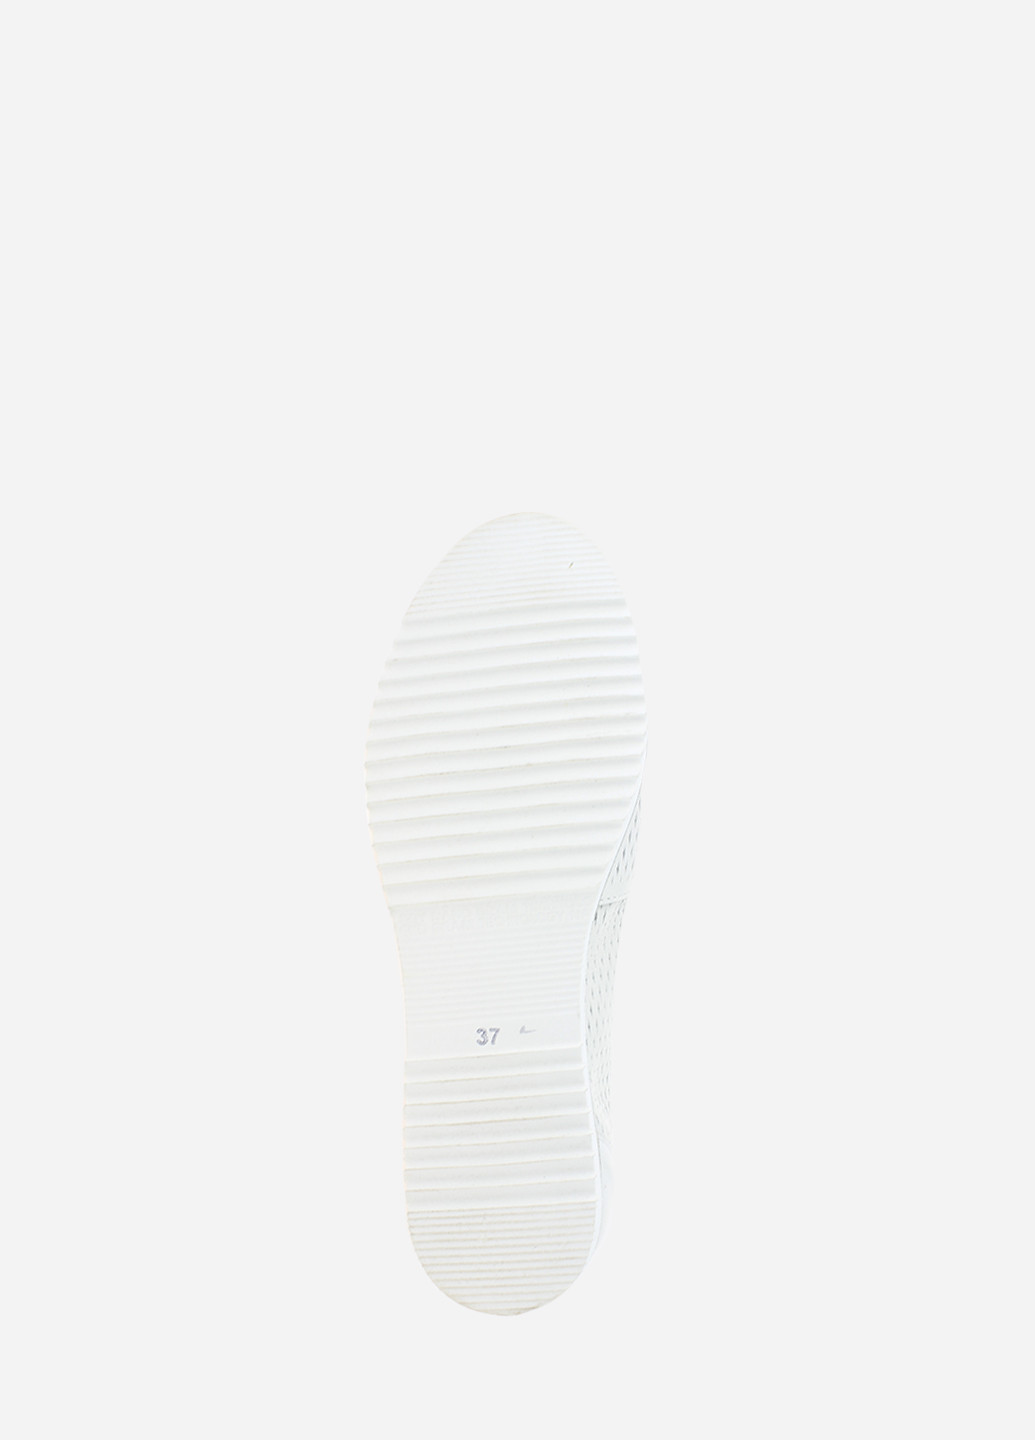 Туфли RM2246-1 Белый Moderate